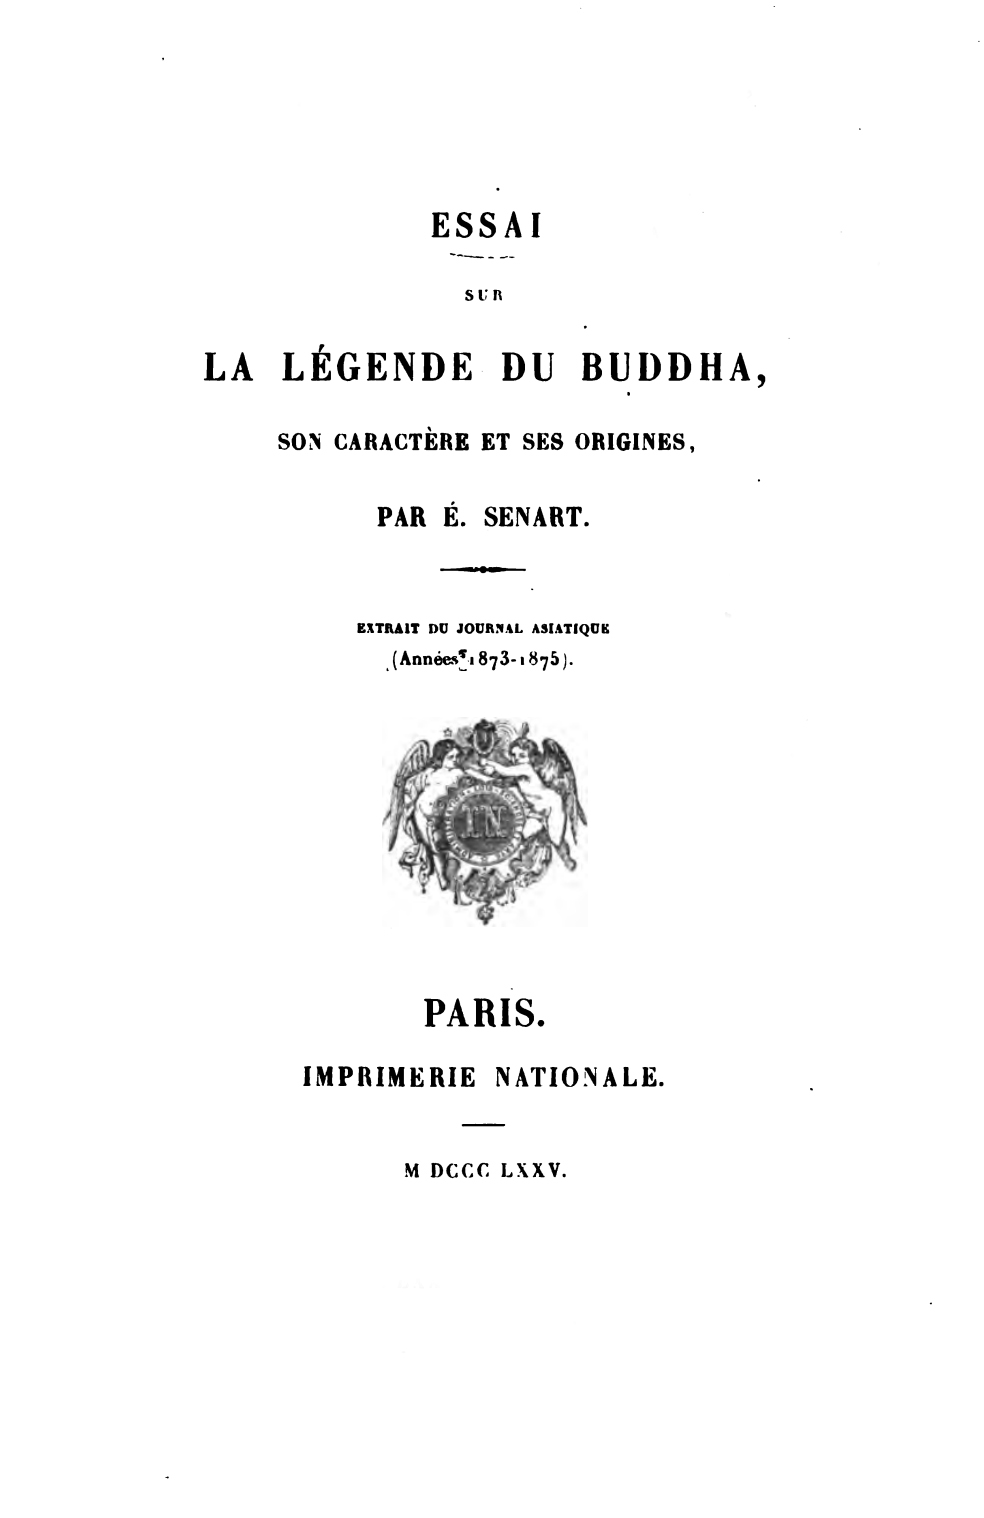 Essai sur La Legende du Buddha-front.jpg